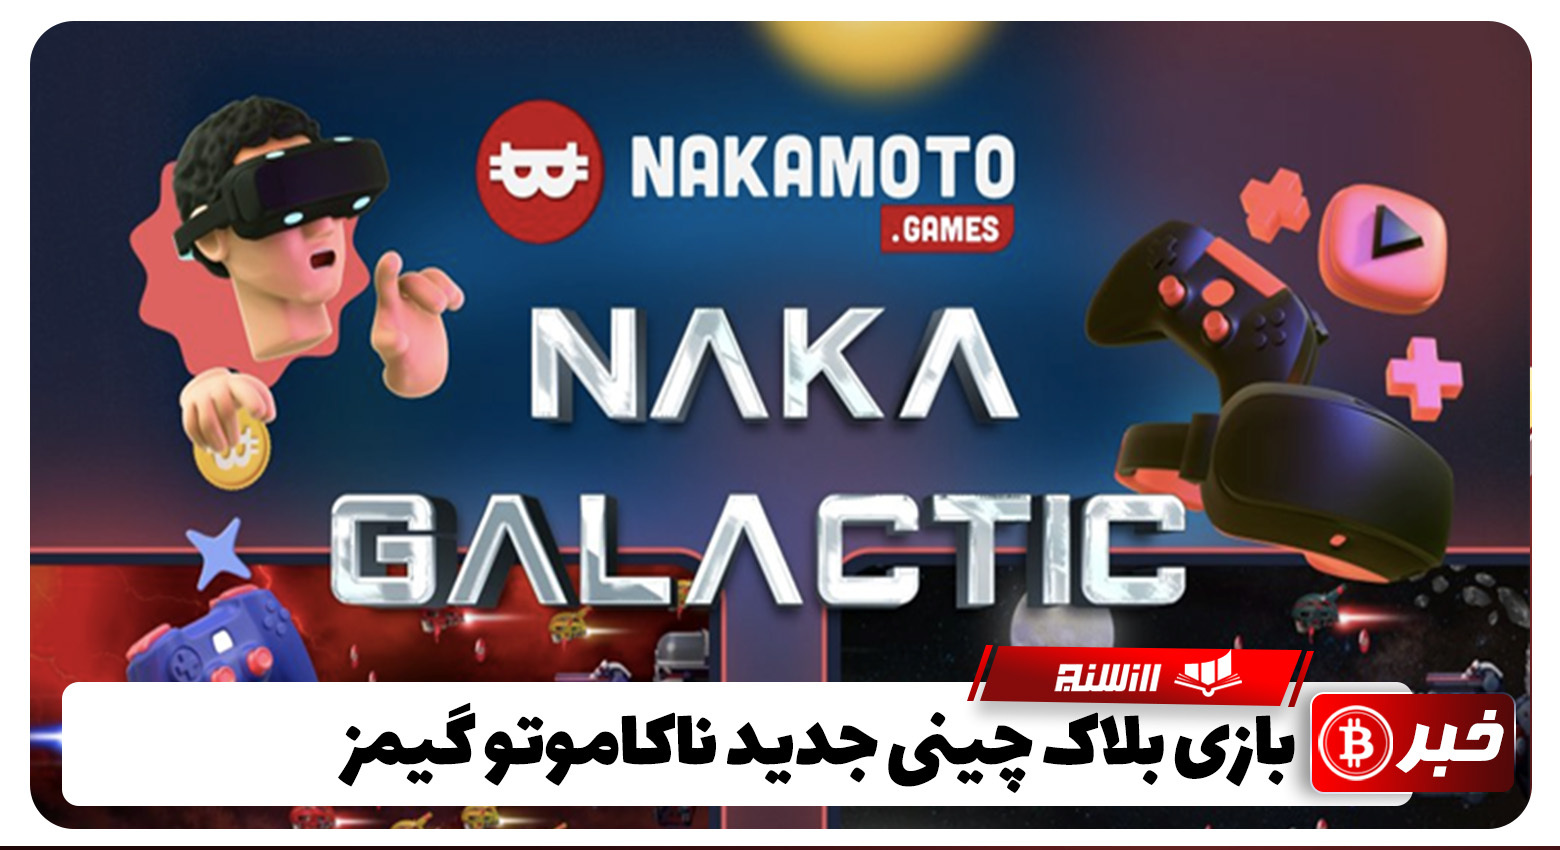 معرفی NAKA Galactic سومین بازی ناکاموتو گیمز در سال 2022